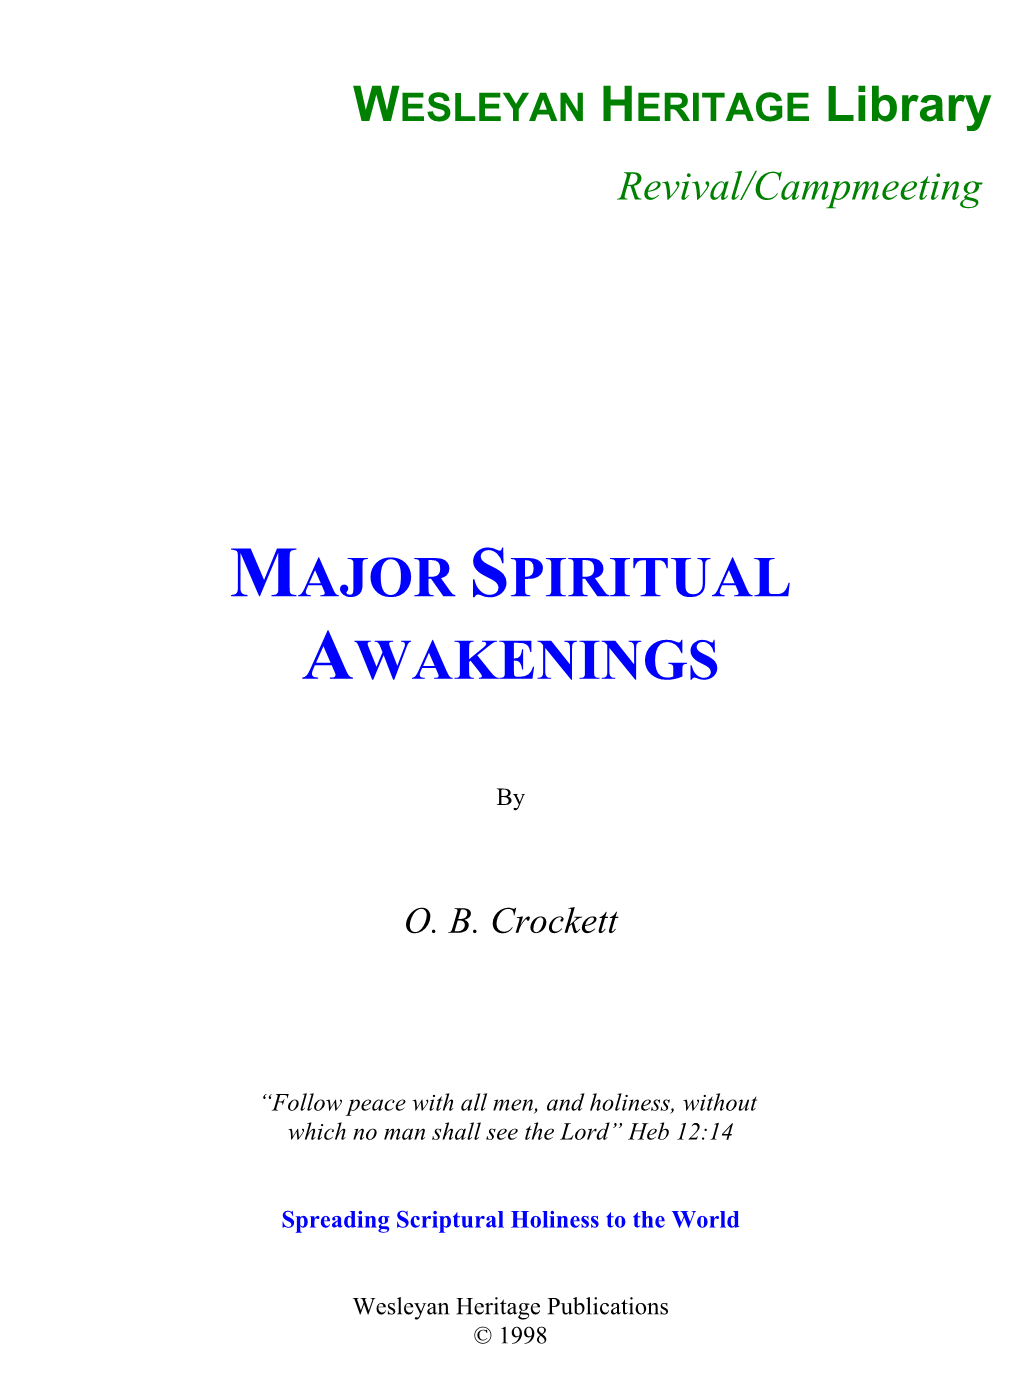 Major Spiritual Awakenings